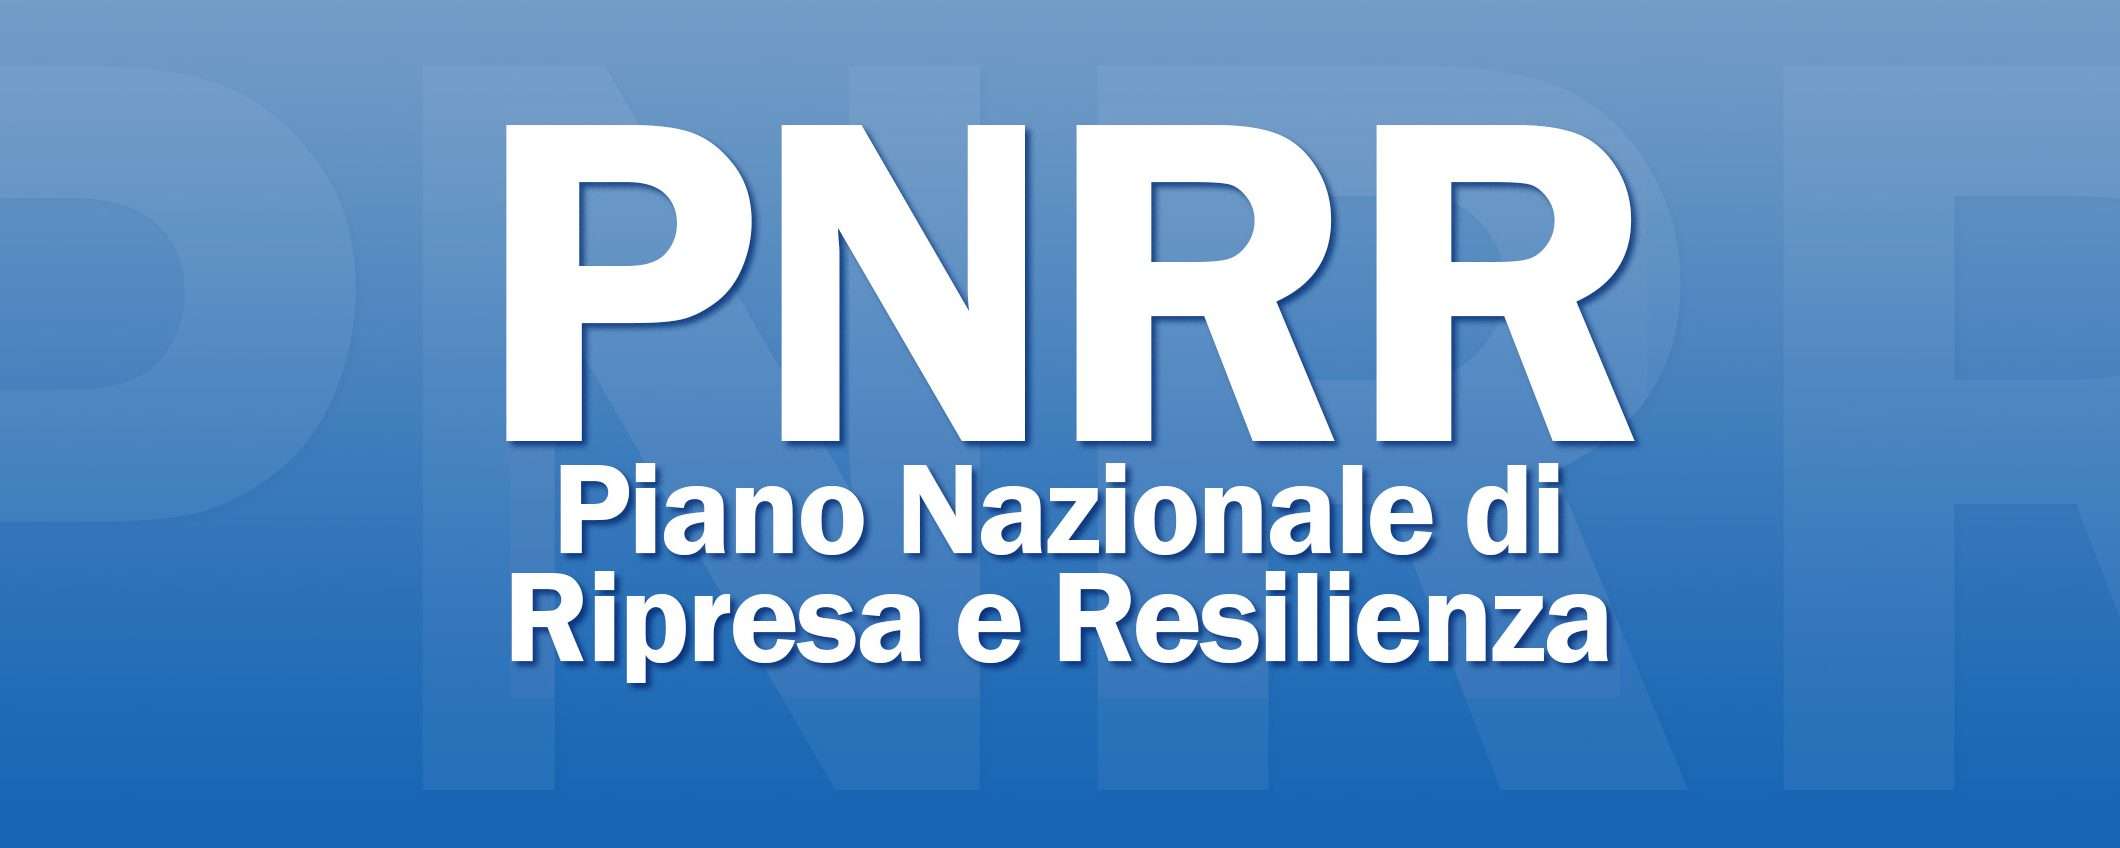 PNRR aggiornato: transizione verde e digitale